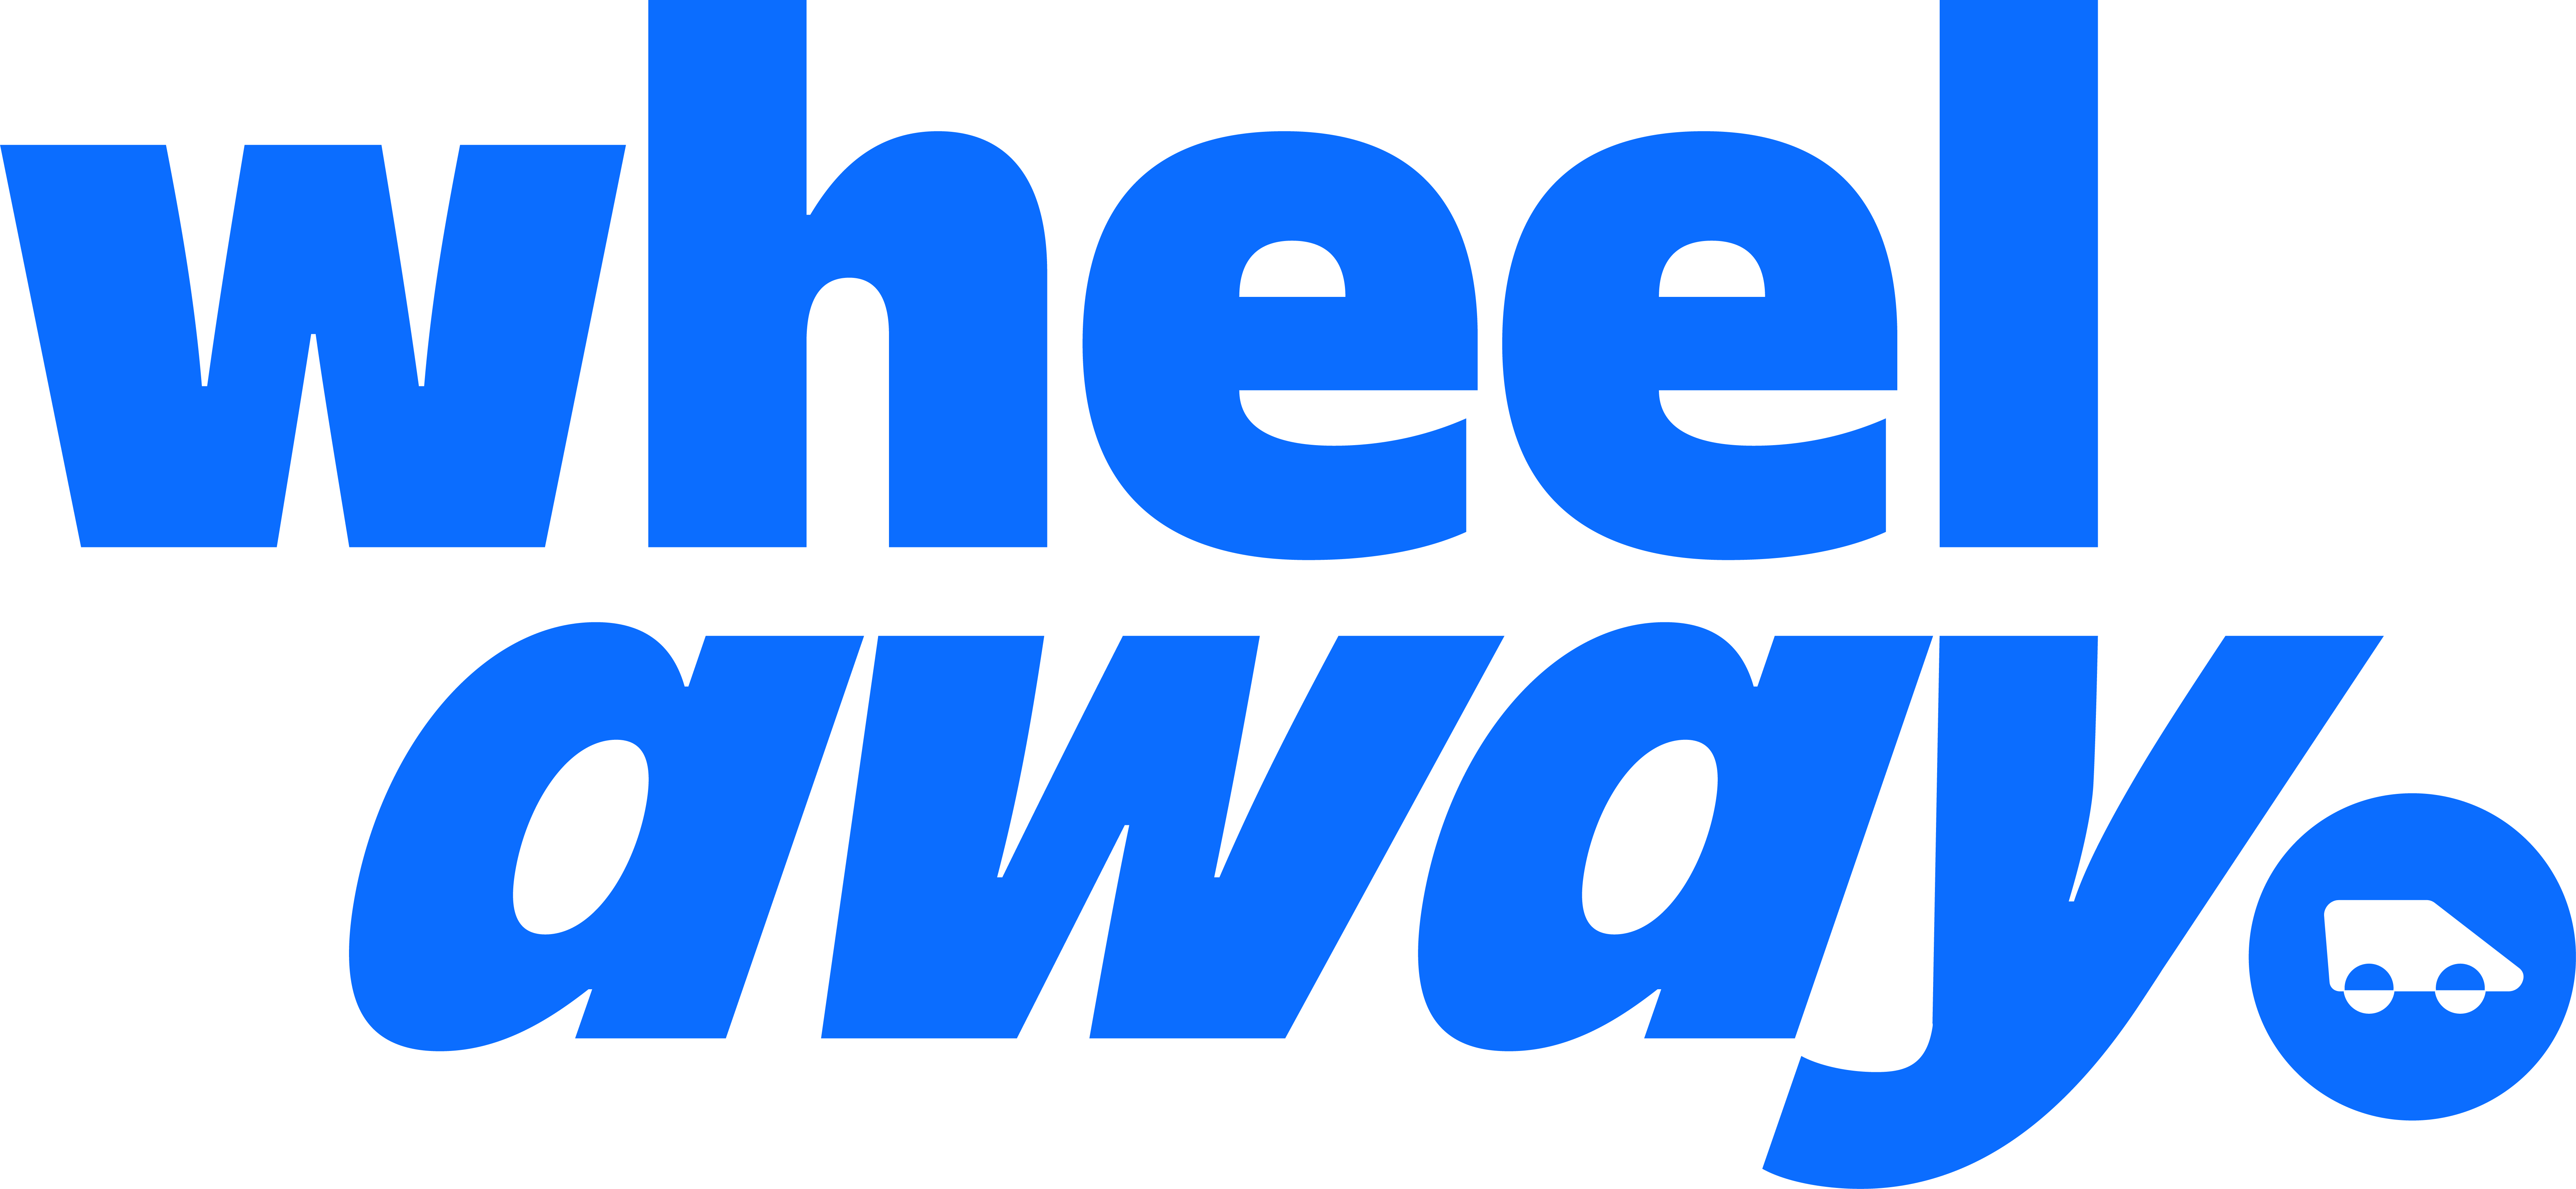 wheelaway logowicon blue (1)